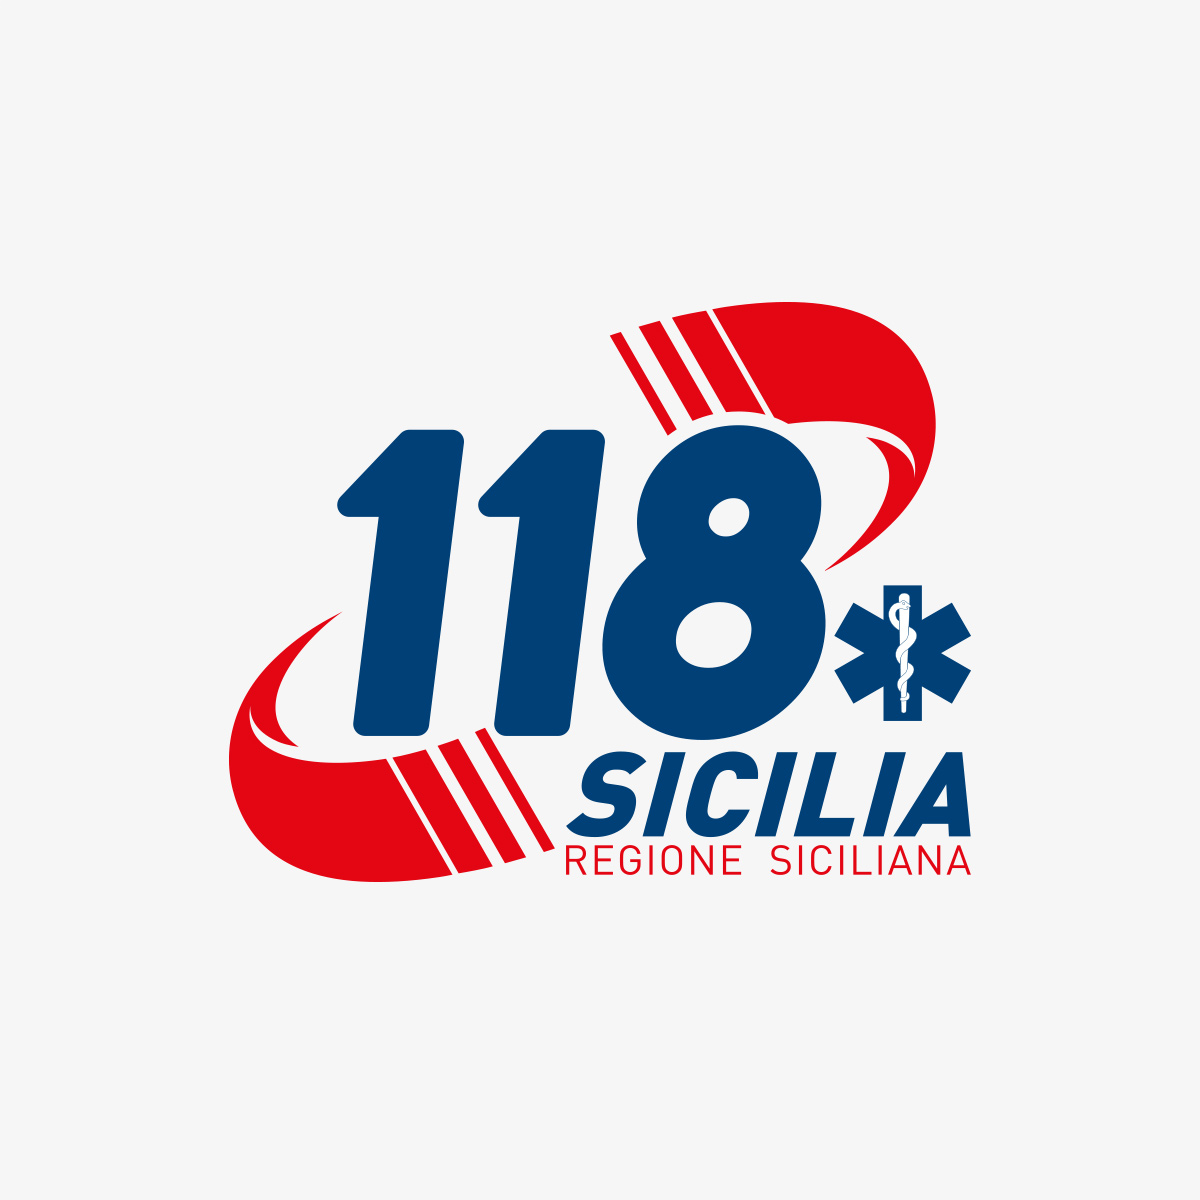 s-e-u-s-118-sicilia-ambulanze-svuotate-di-medici-anestesisti